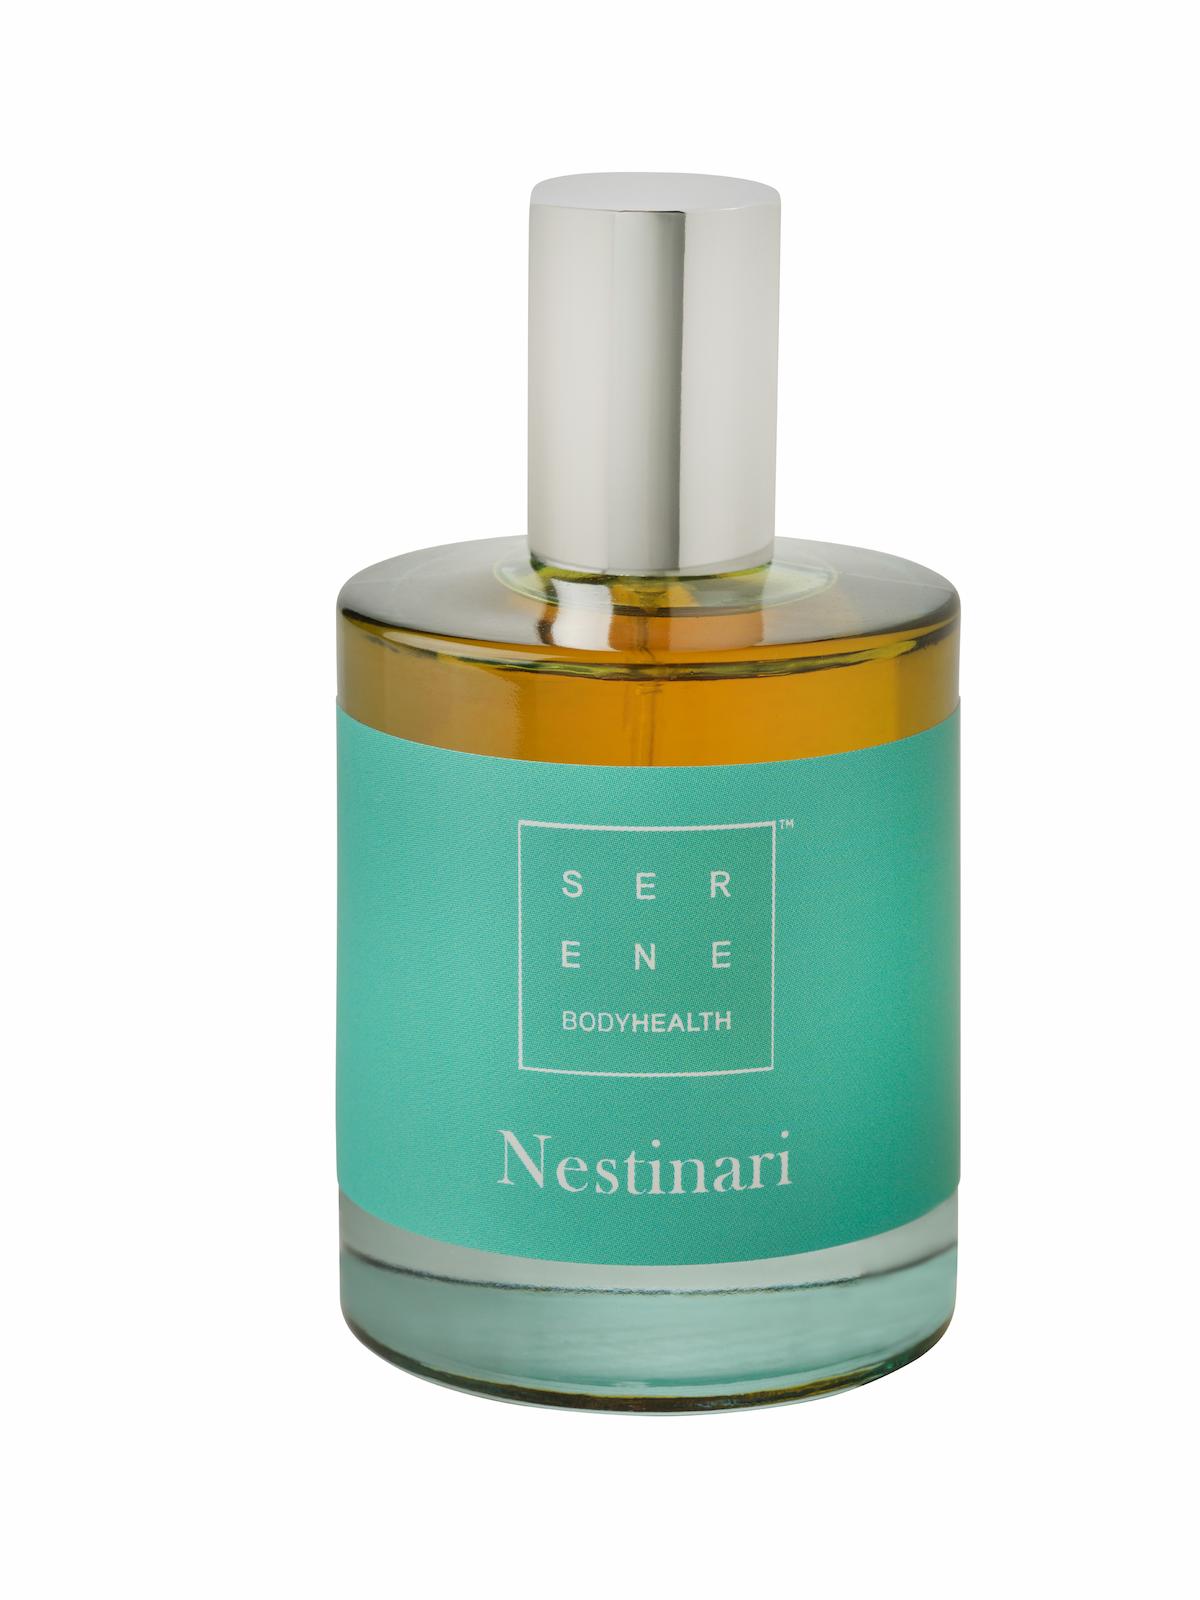 Serene Body Health Nestinari Eau de Parfum 50ml